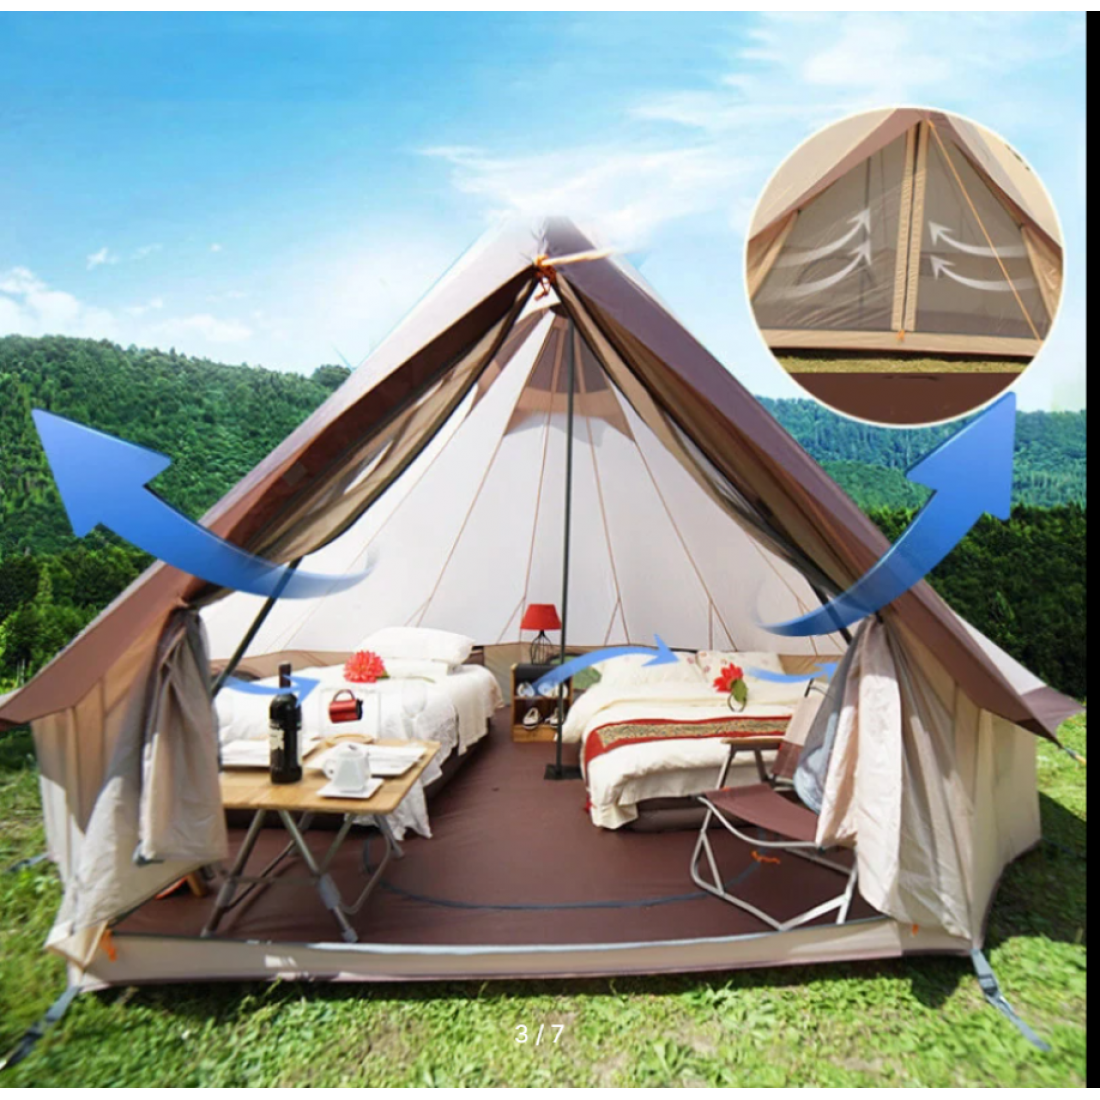 Mir camping палатка. Лагерь модульный (шатер и 2 палатки) Nash Base Camp. Палатки юрта Монголия. Палатка юрта microcamping. Юрта-10 палатка.